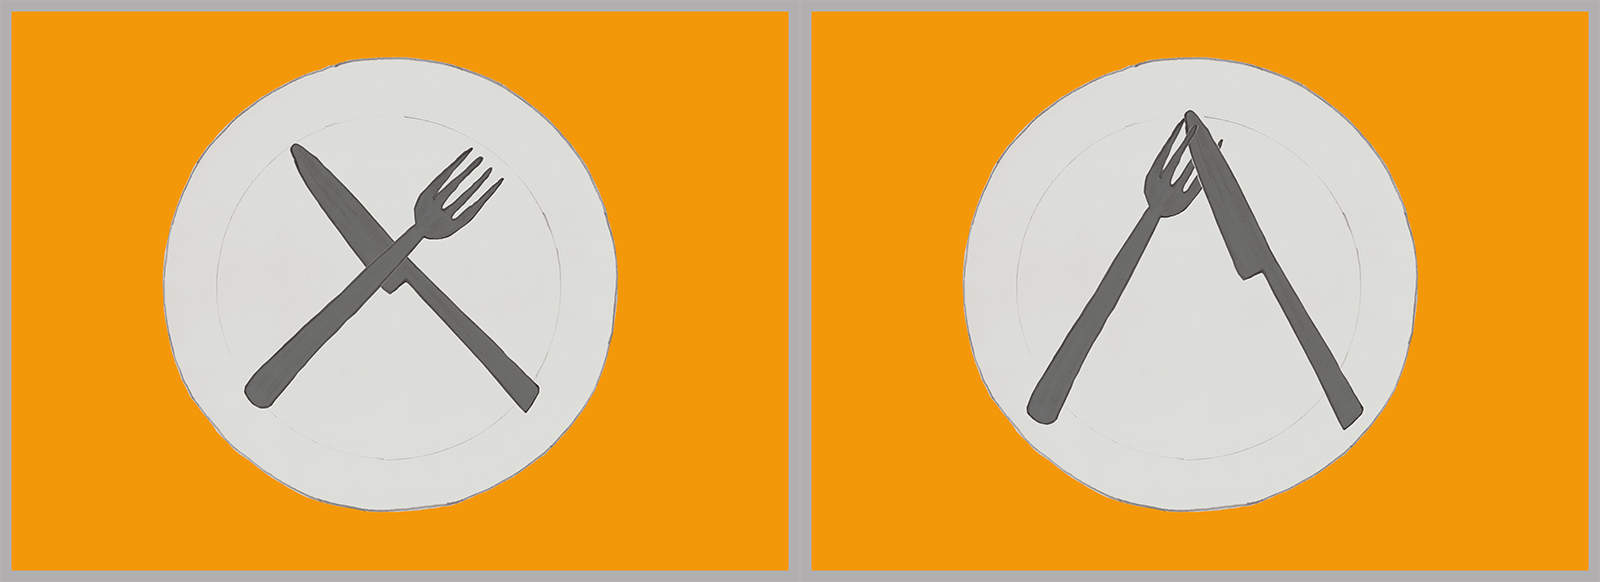 Los cubiertos cruzados formando una X en medio del plato, o en forma de V invertida, pero cruzando el cuchillo entre los dientes del tenedor.